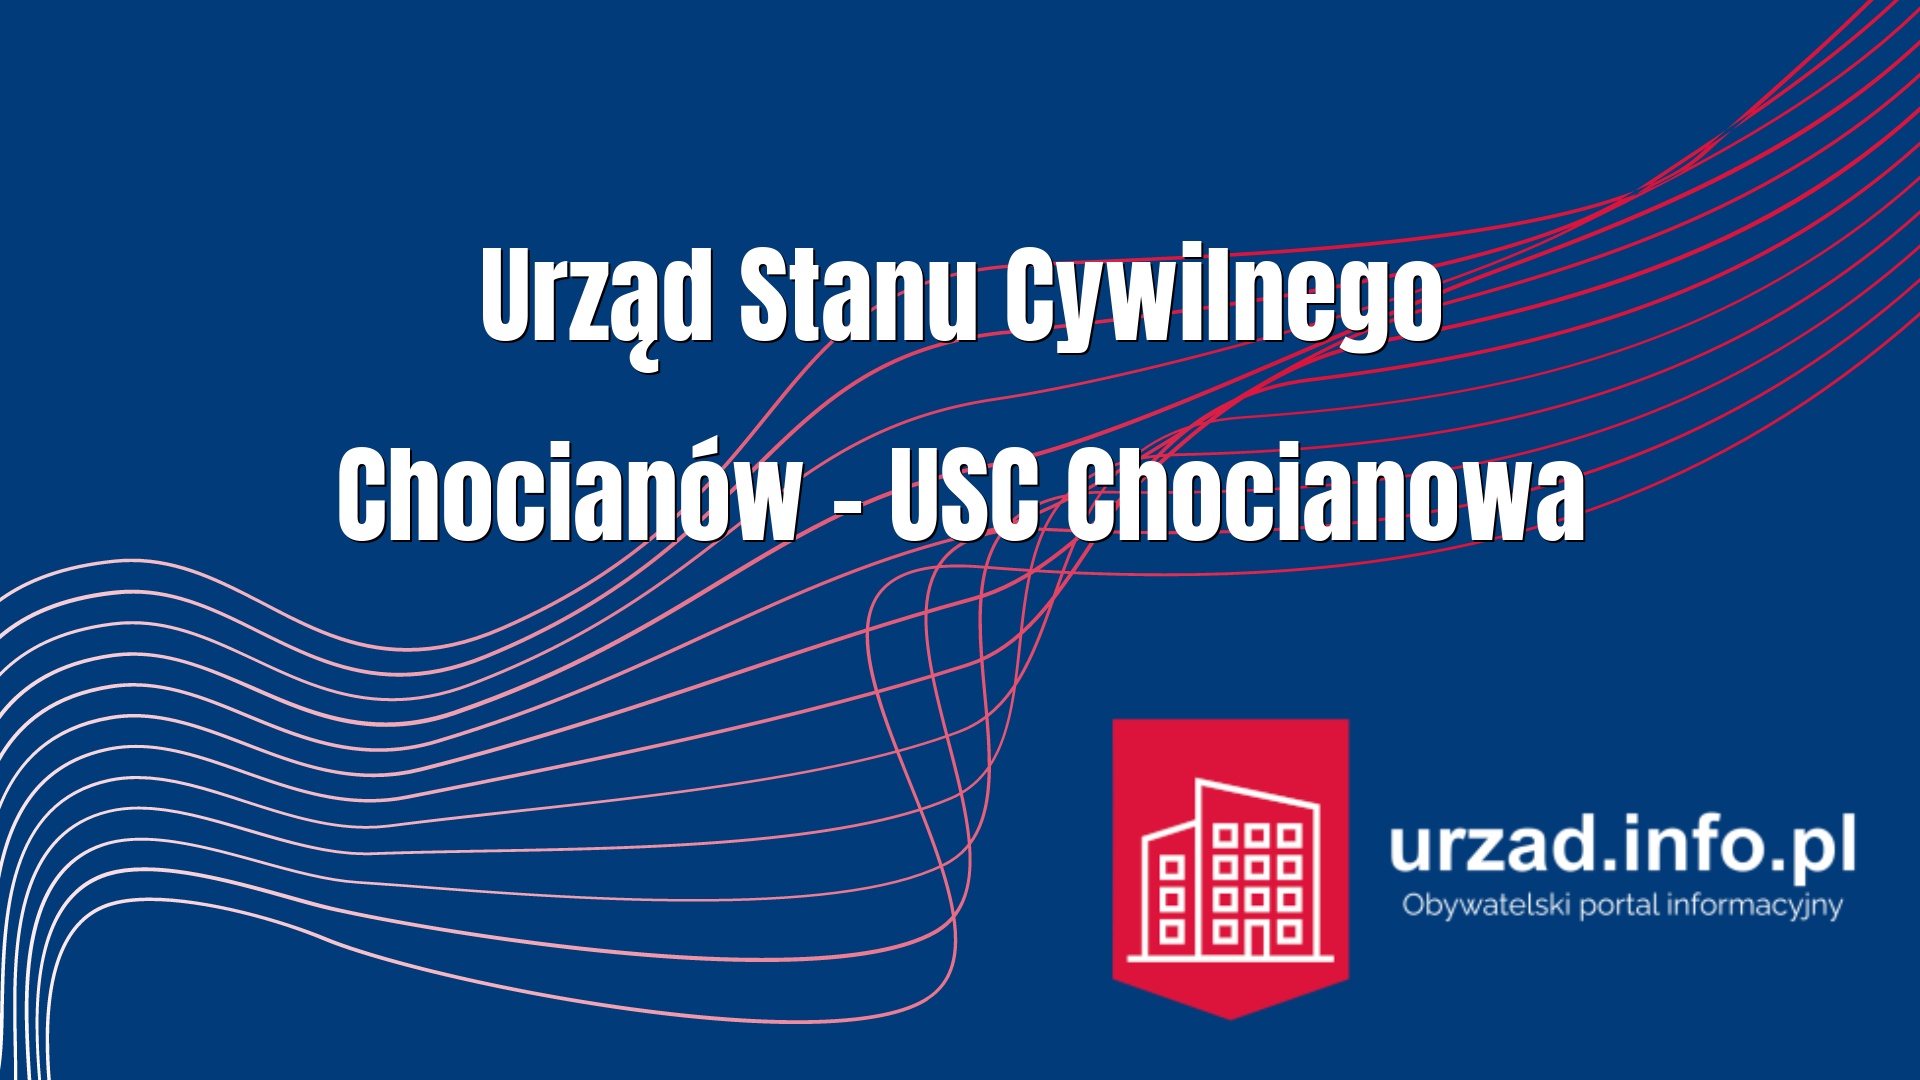 Urząd Stanu Cywilnego Chocianów – USC Chocianowa